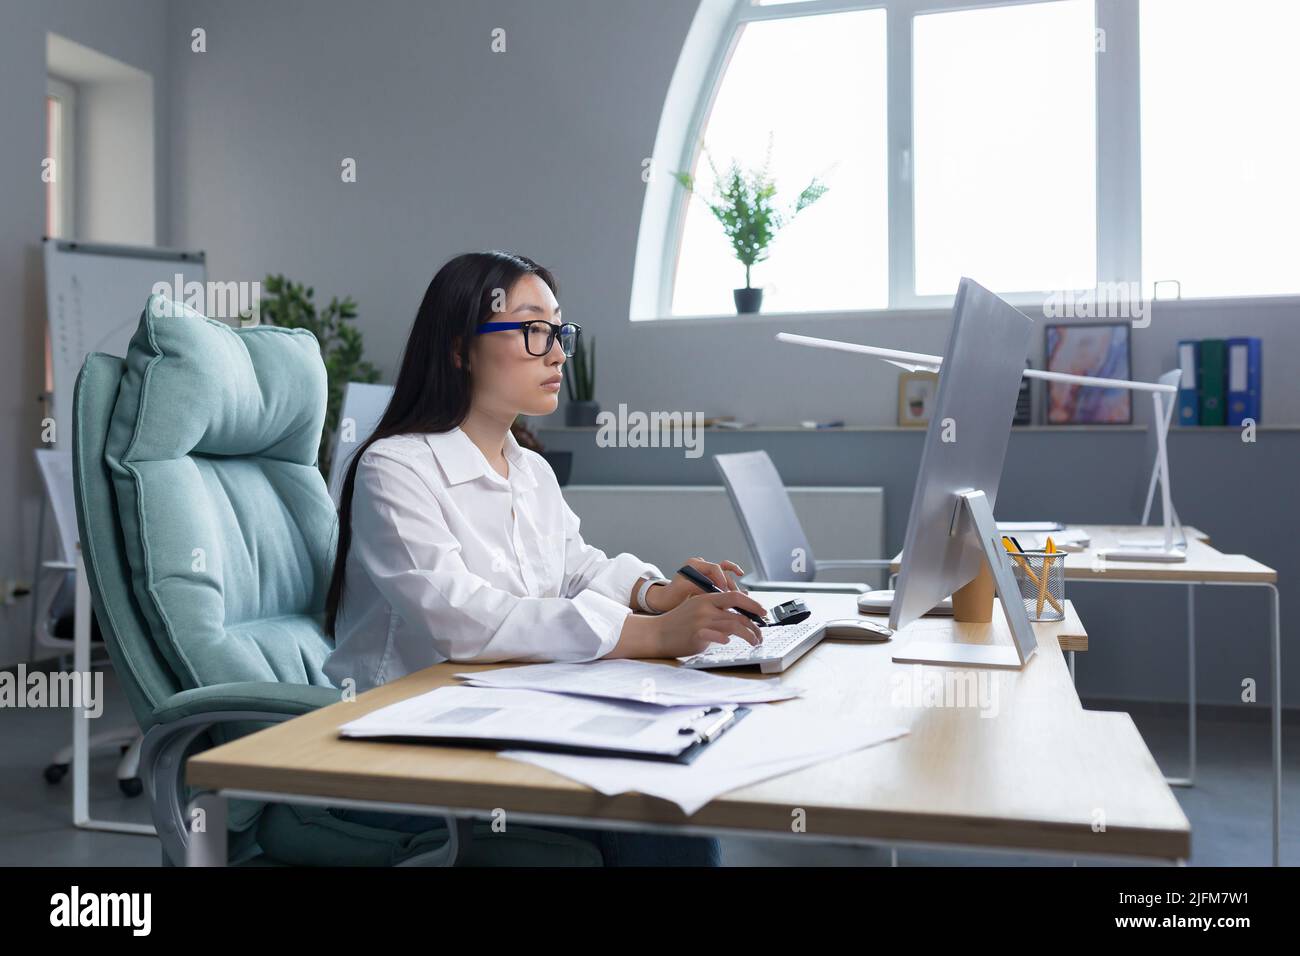 Asiatische erfolgreiche Geschäftsfrau arbeitet mit Computer in modernen Büro, nachdenklich und konzentriert. Stockfoto